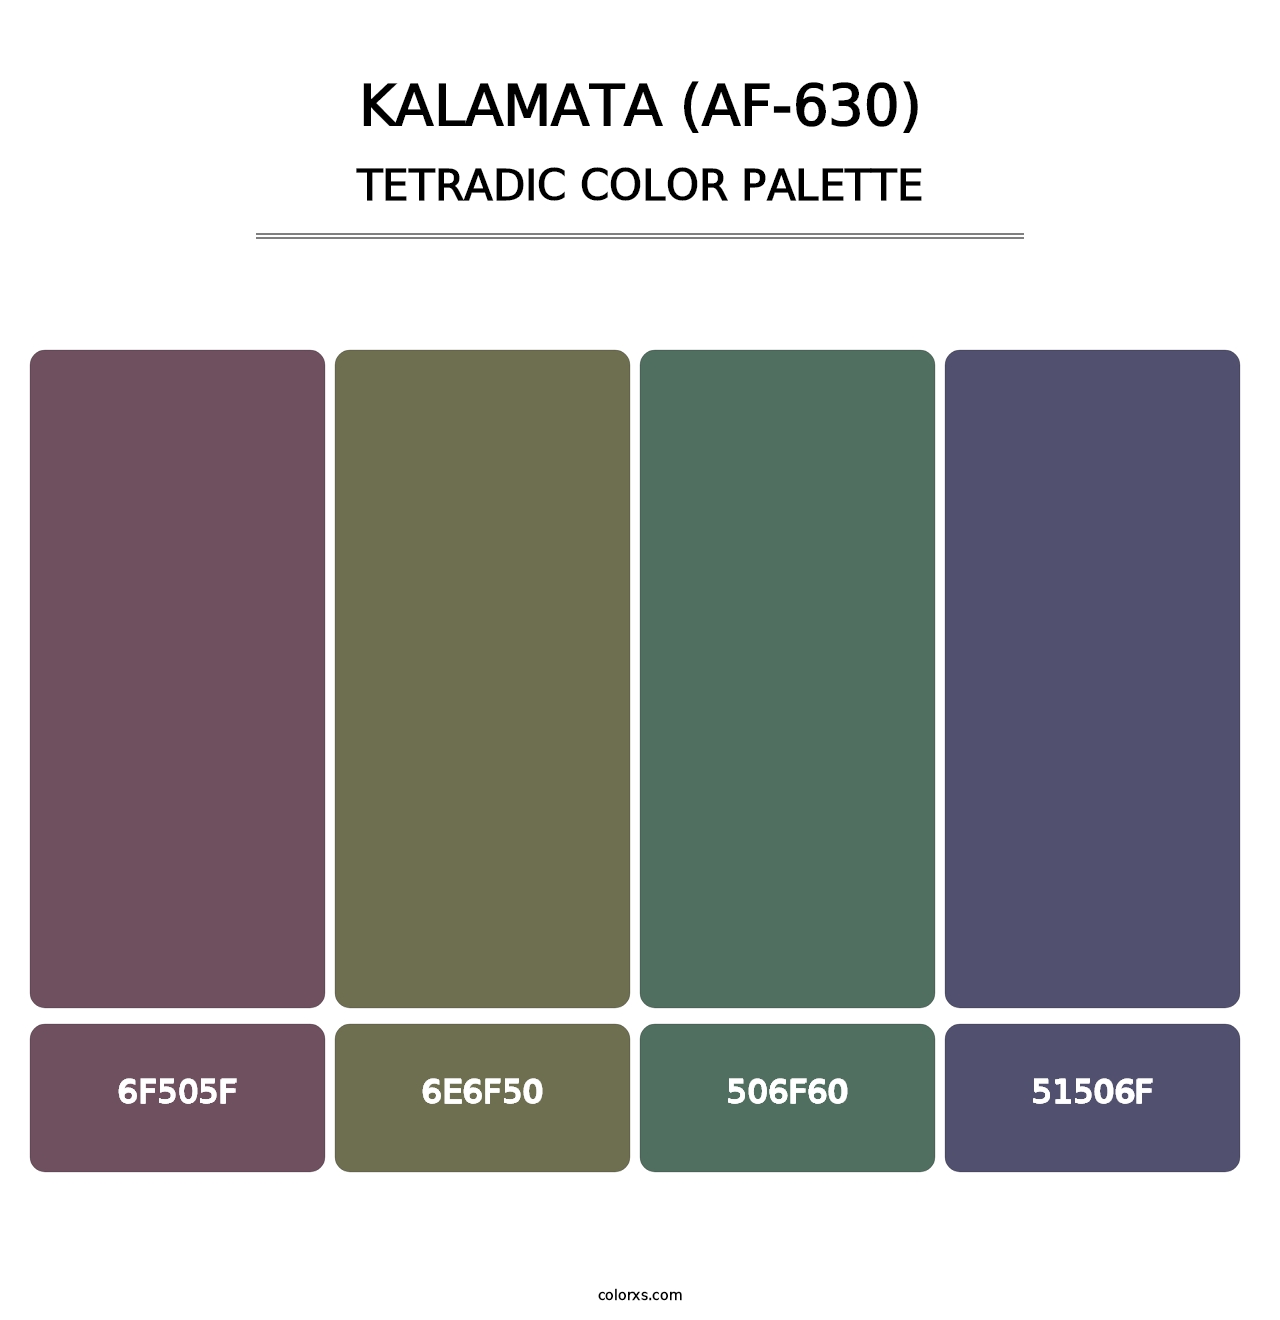 Kalamata (AF-630) - Tetradic Color Palette